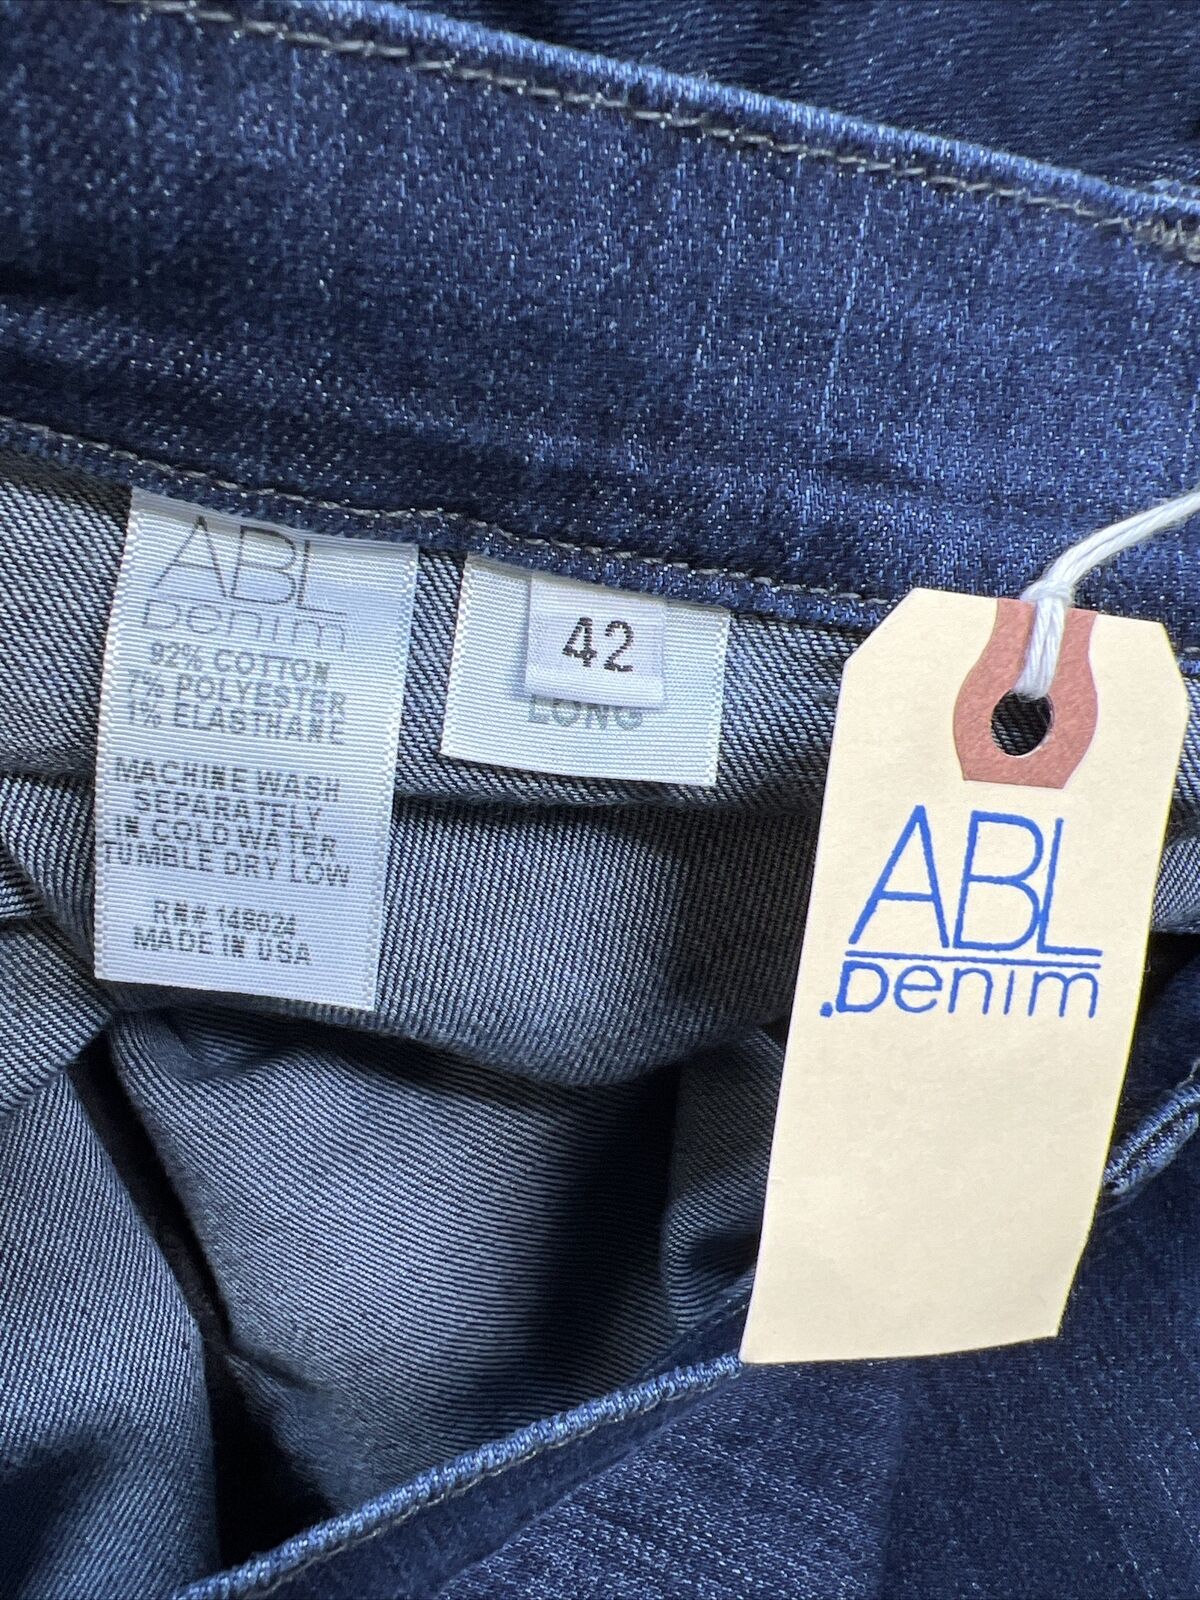 NUEVOS jeans clásicos accesibles con lavado oscuro para mujer ABL Denim - 42 de largo